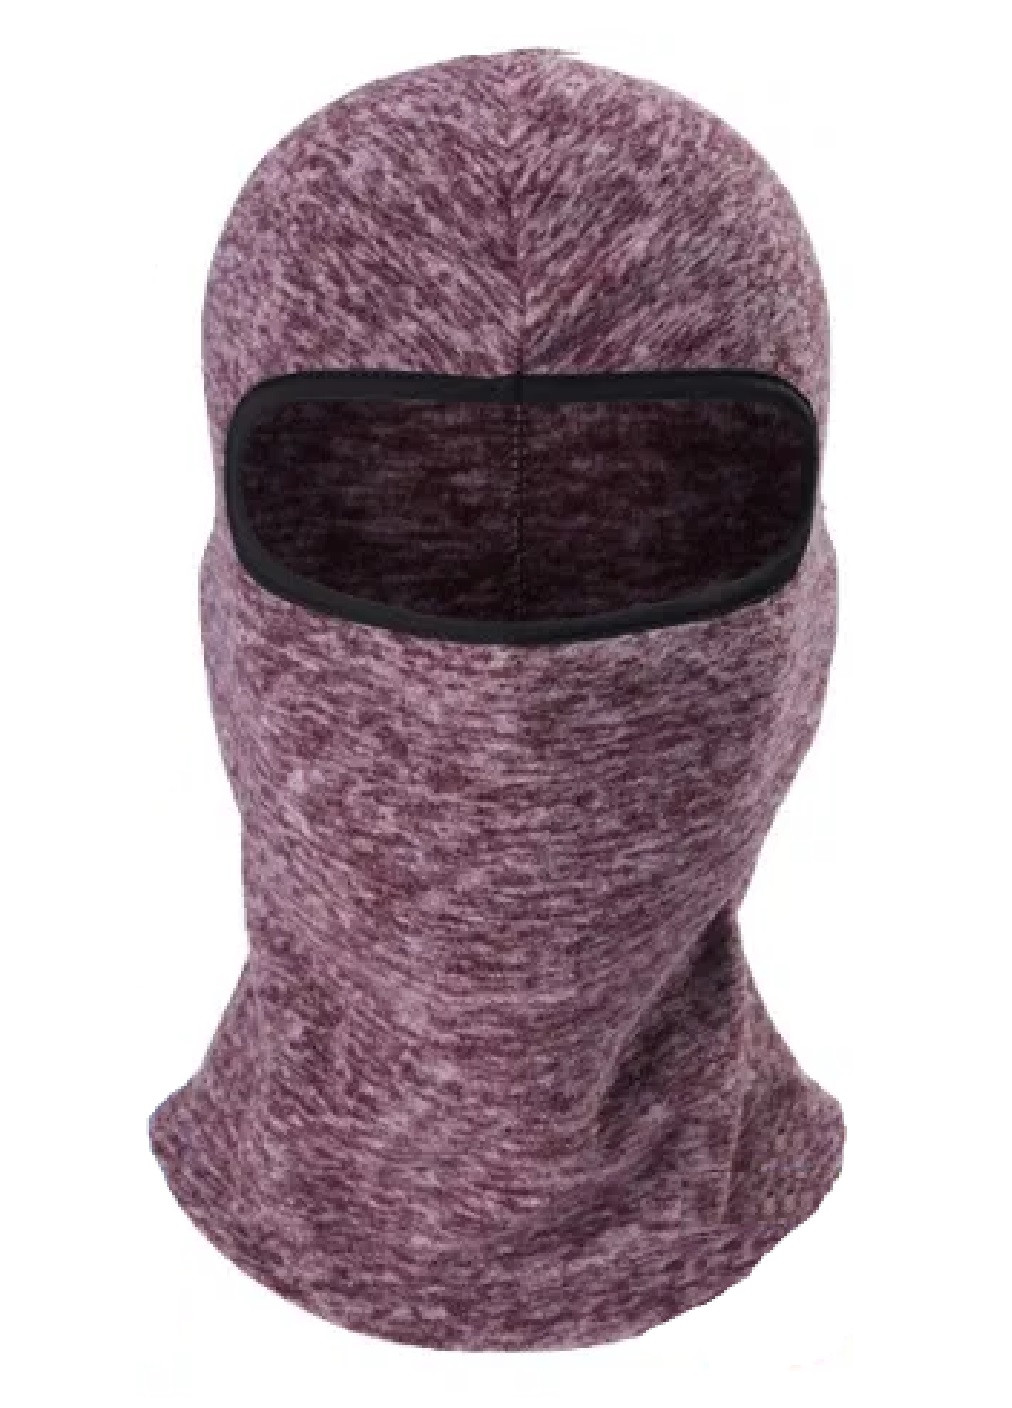 Unbranded утепленная маска флисовая балаклава зимний бафф шарф подшлемник шапка (474025-prob) коричневая однотонный коричневый повседневный флис производство -